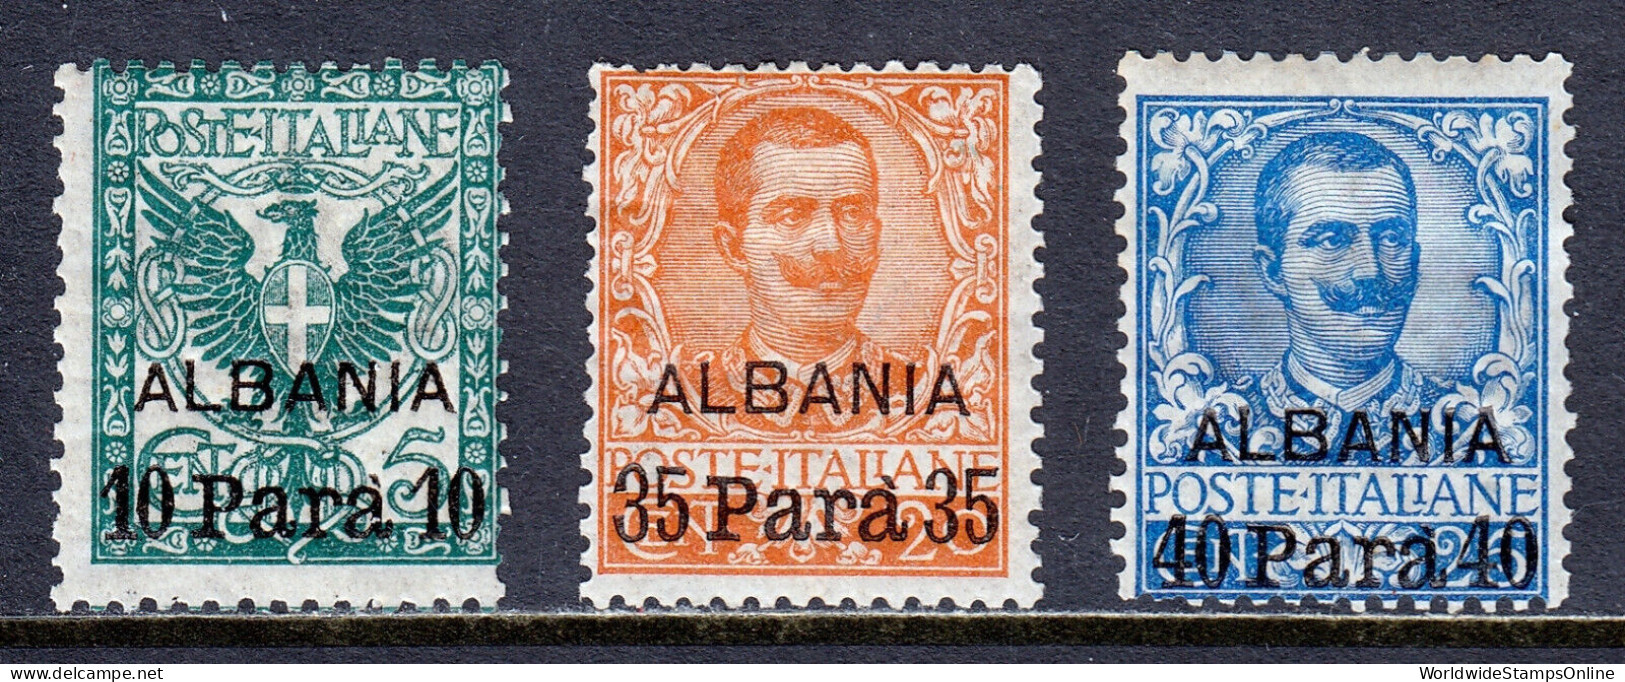 ITALY (OFFICES IN ALBANIA) — SCOTT 1-3 — 1903 OVERPRINT SET — MH — SCV $26 - Albanië